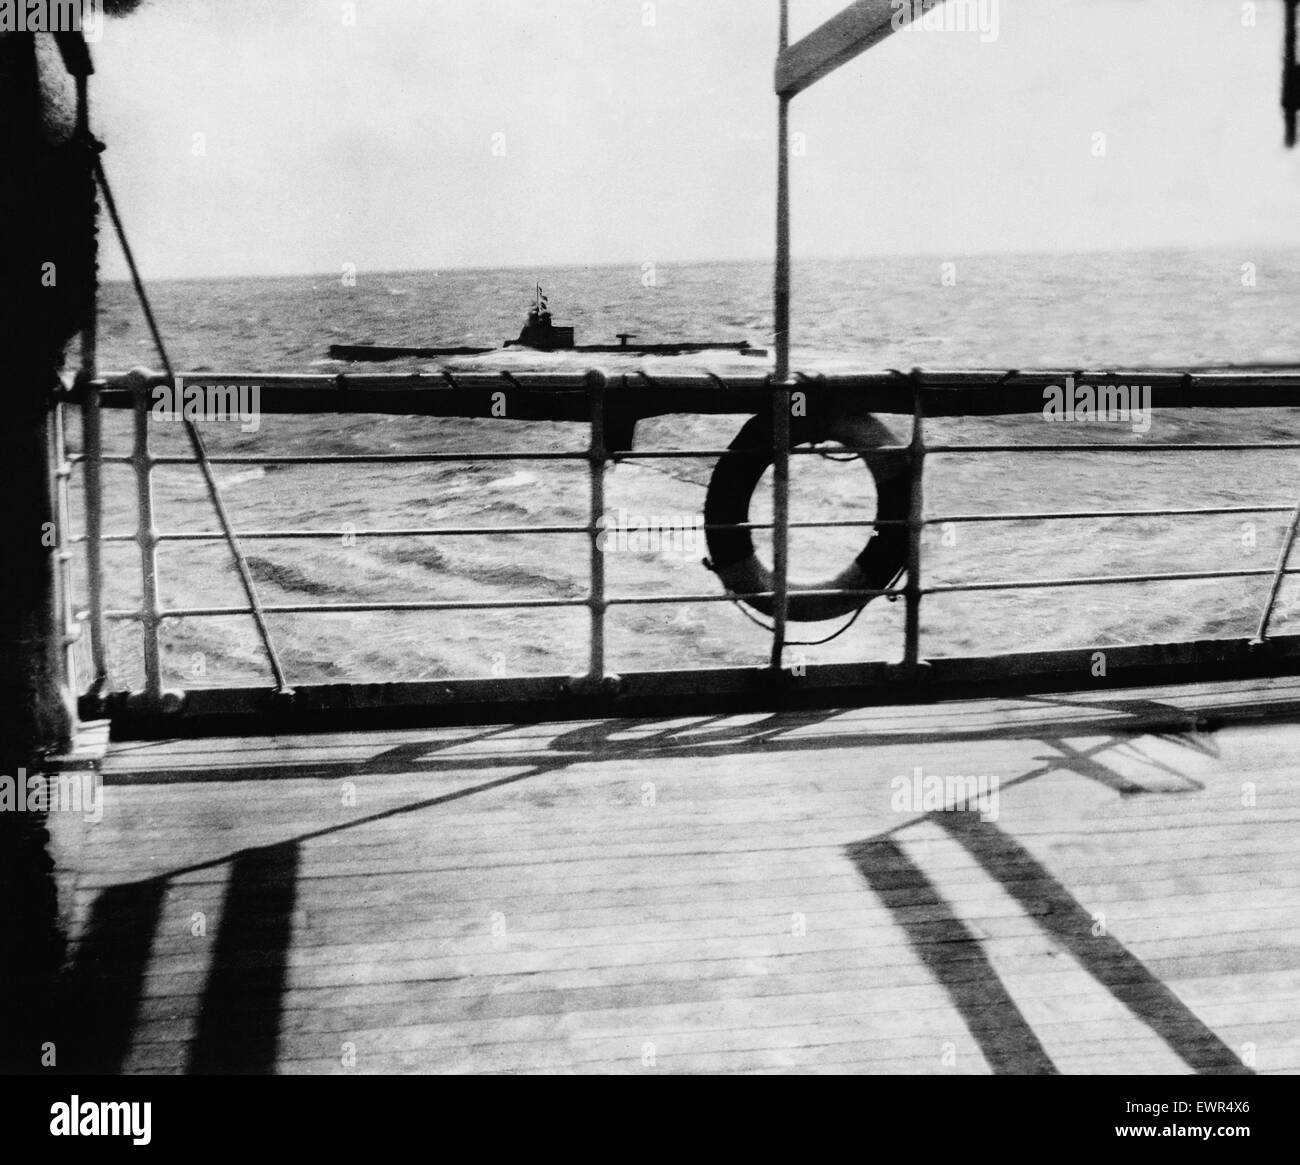 Untergang des Schiffes Falaba. DM 3141c Box 5 März 28. 1915. Der Untergang der "Falaba". Lauern drohend im Hintergrund, als ob es um sicherzustellen, den Auftrag, das u-Boot fertig war, die das Fahrgastschiff torpediert hatte. Die britischen Liner "Falaba" war tor Stockfoto